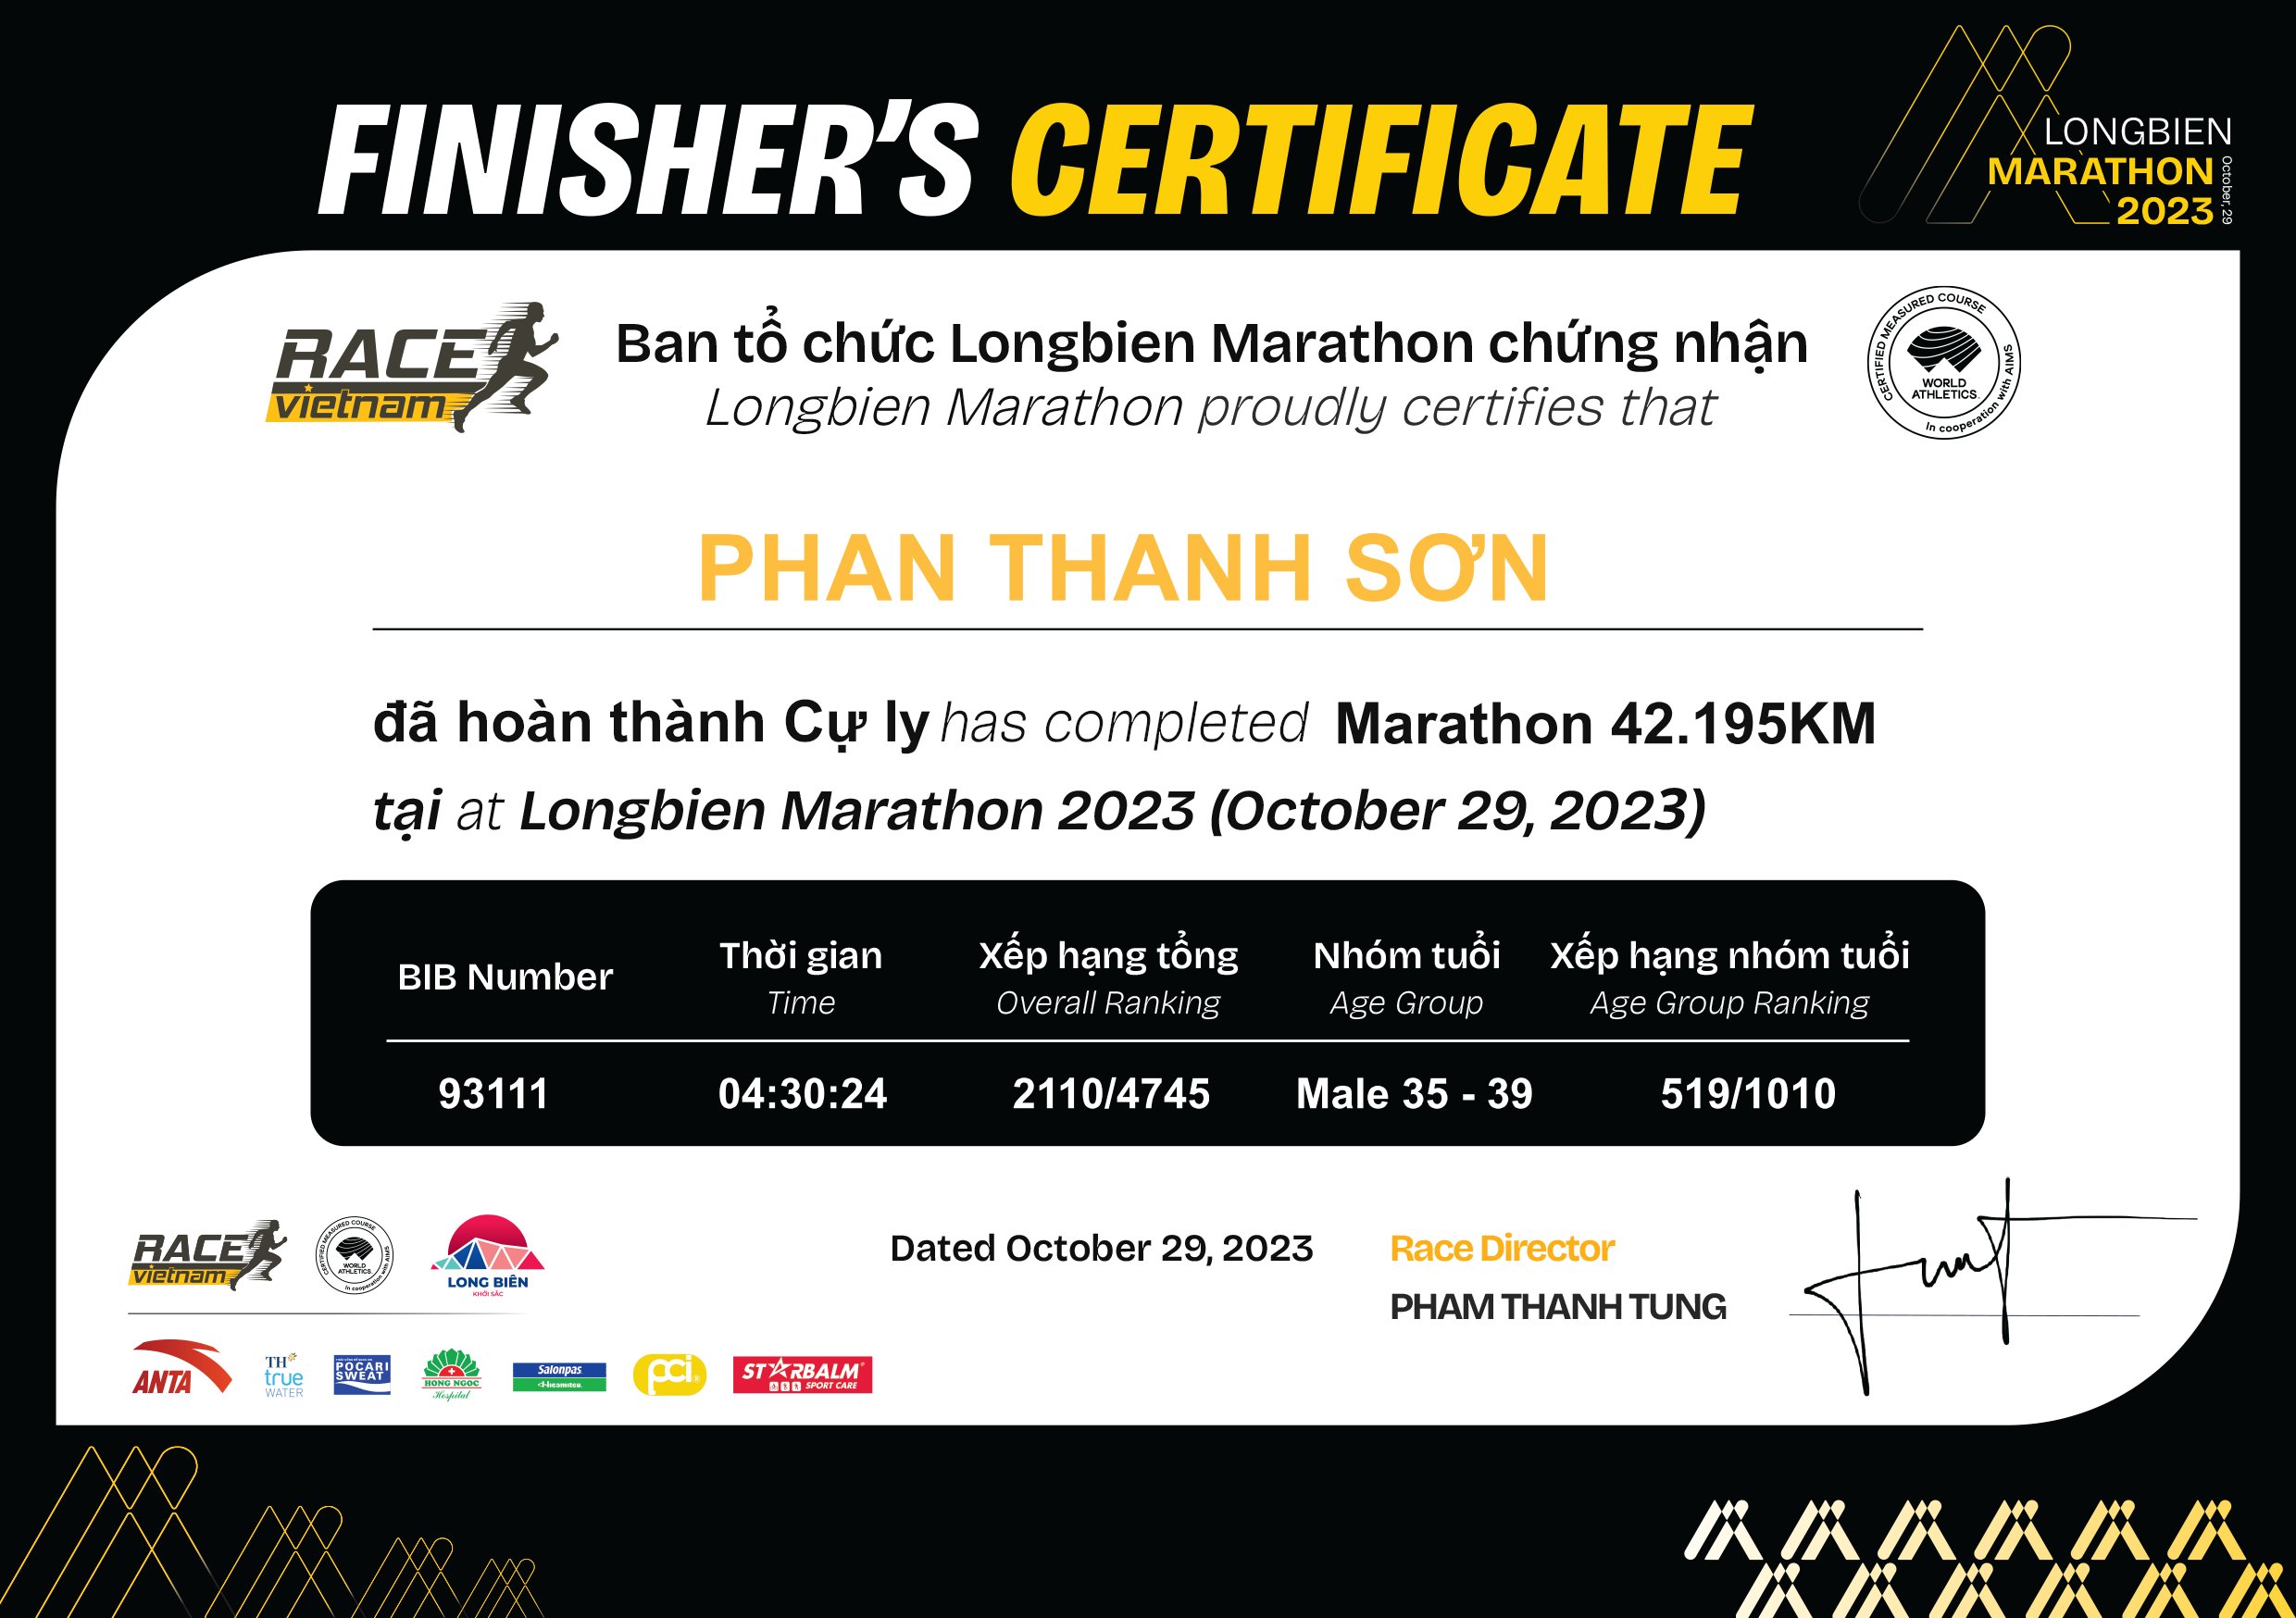 93111 - Phan Thanh Sơn